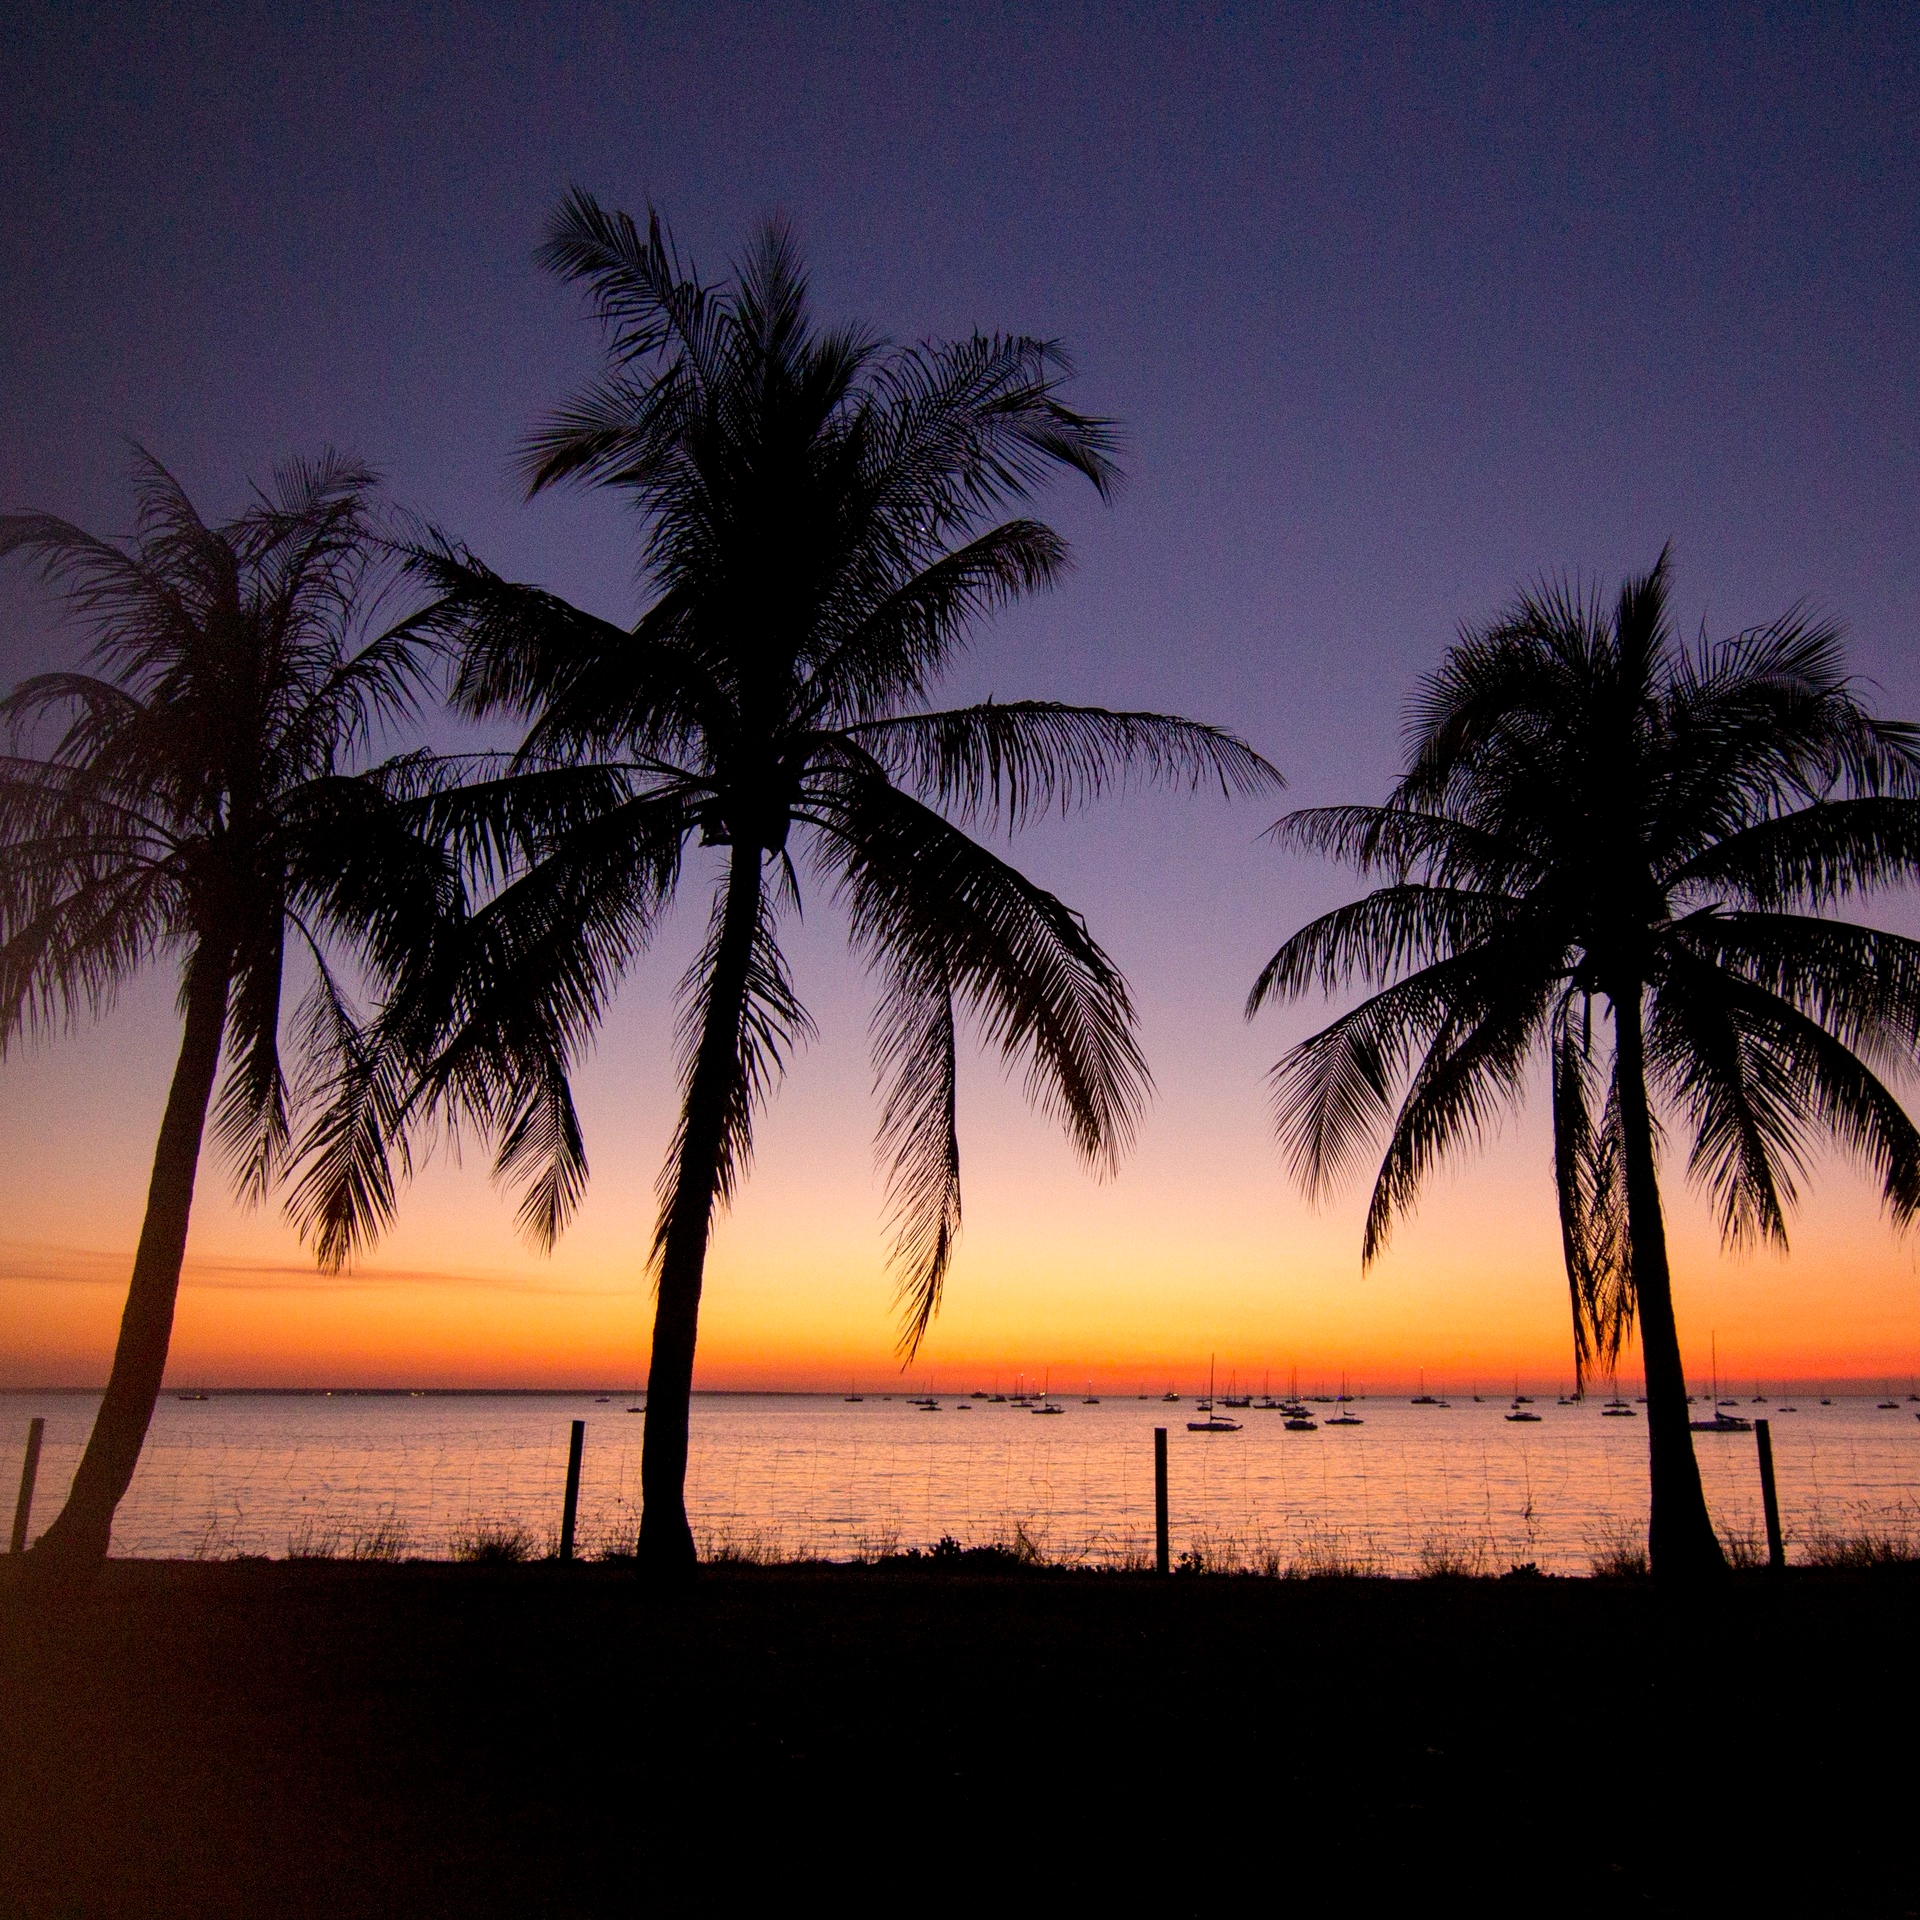 达尔文的海滩日落景象 © 澳大利亚旅游局/澳洲航空公司版权所有